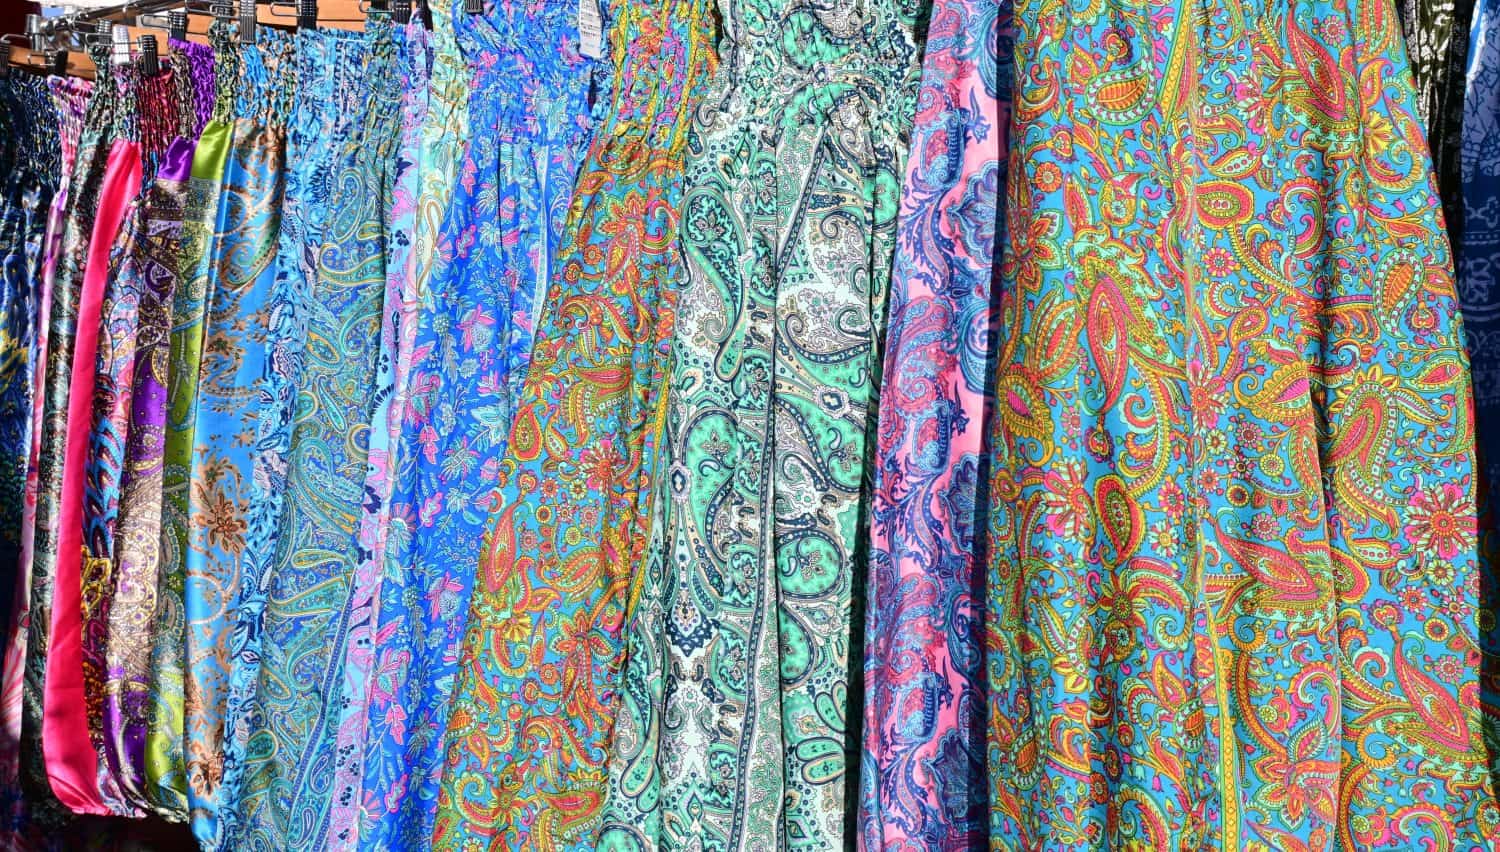 Lots of long skirts, light, fabric, paisley pattern, colorful, pattern